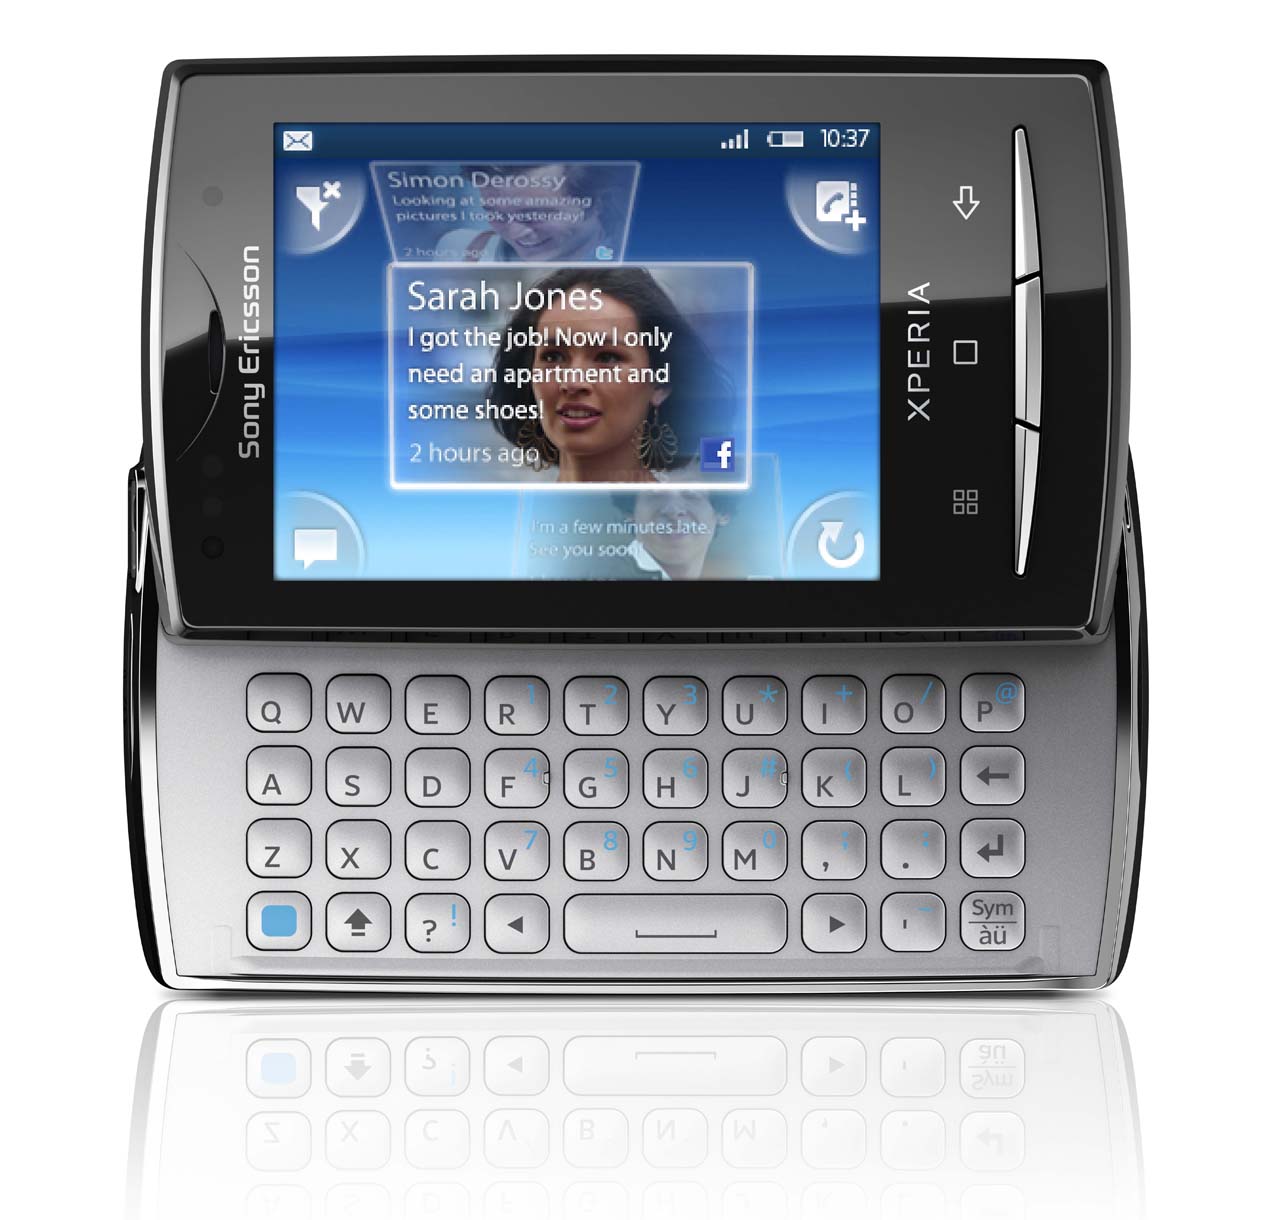 Klingeltöne Sony-Ericsson Xperia X10 mini pro kostenlos herunterladen.